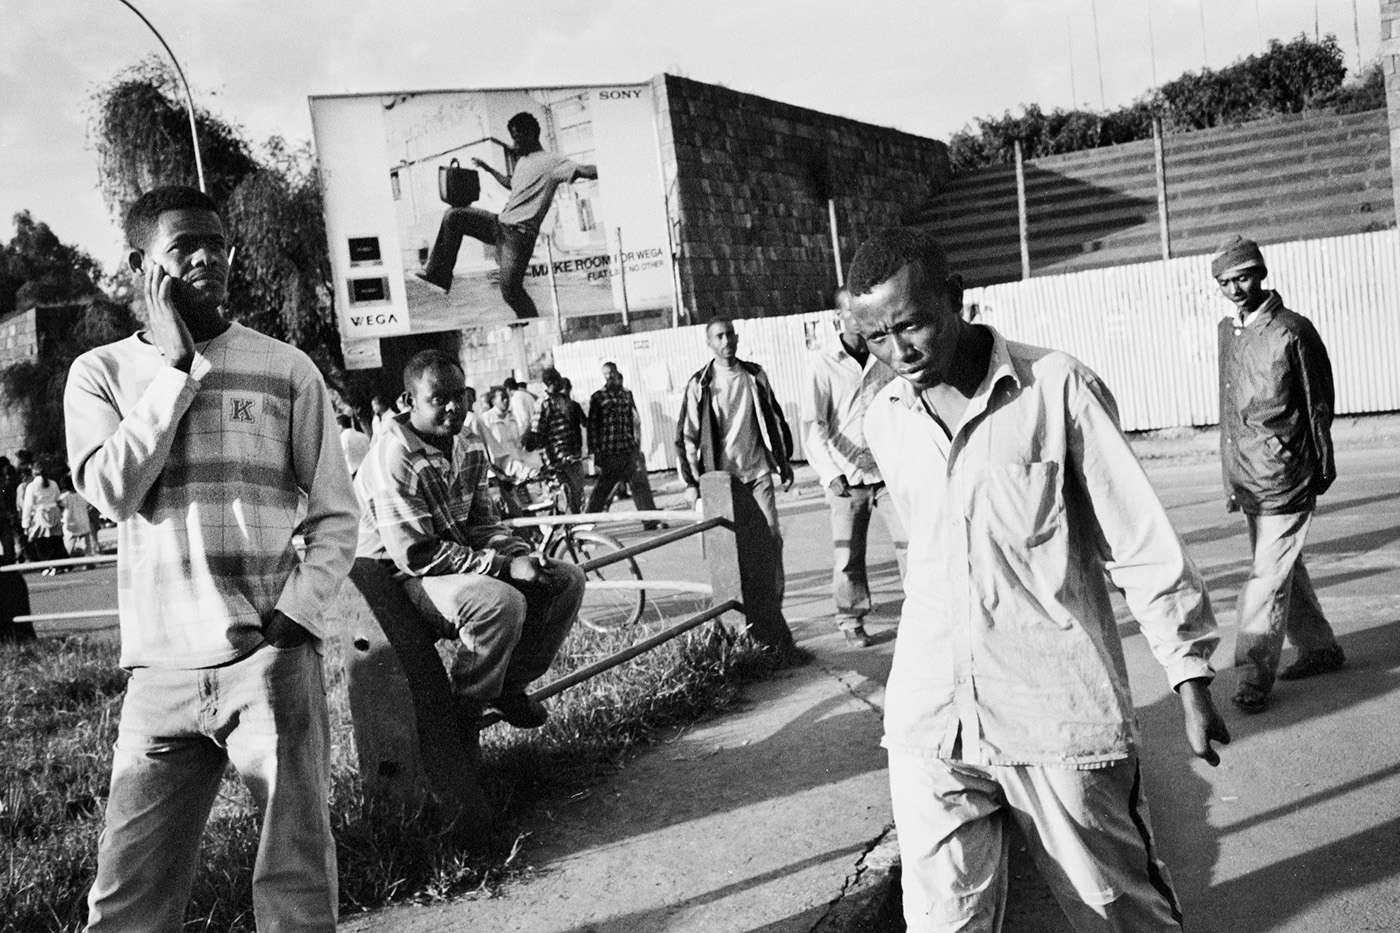 ethiopia africa black and white Street people street life hardship Addis Ababa monochrome 35mm photo habesha